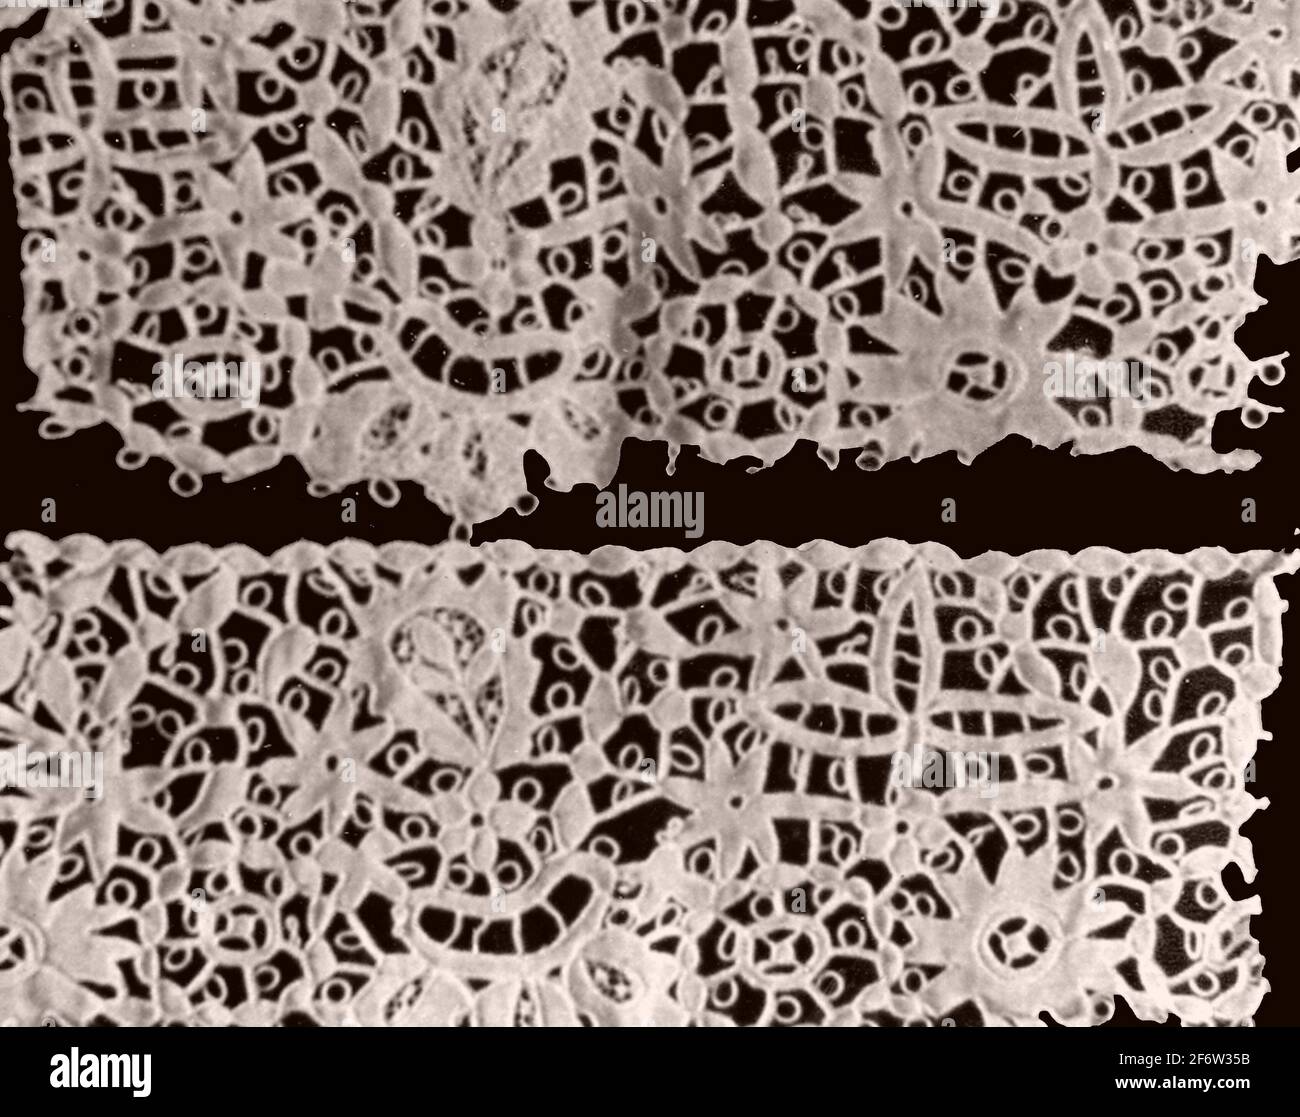 Grenze und zwei Fragmente - 1850 - 1900 - Irland, Carrickmacross. Baumwolle, Leinwandbindung; in Couching bestickte Schnittarbeiten mit Knopflochleisten; Stockfoto